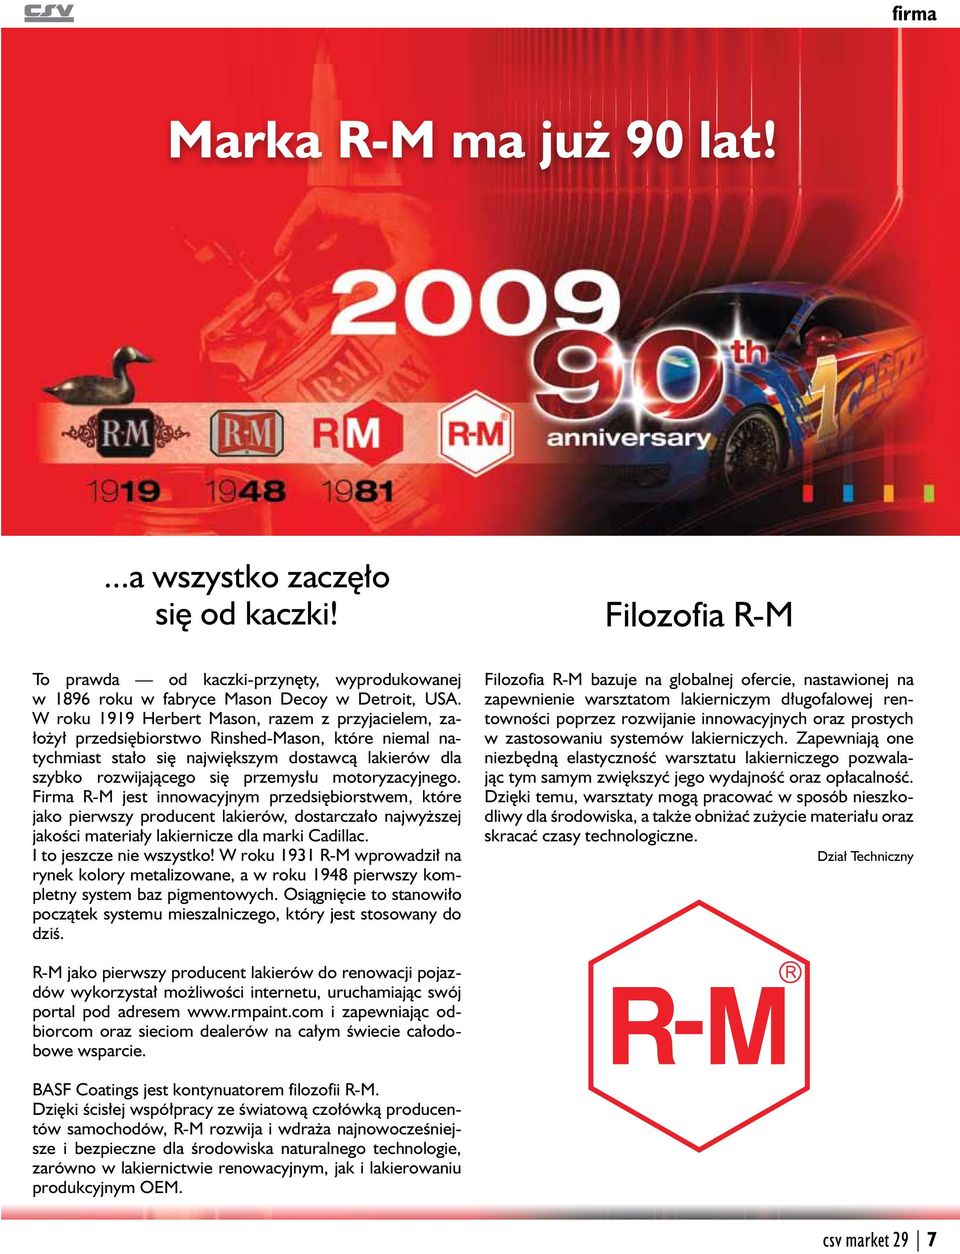 motoryzacyjnego. Firma R-M jest innowacyjnym przedsiębiorstwem, które jako pierwszy producent lakierów, dostarczało najwyższej jakości materiały lakiernicze dla marki Cadillac.